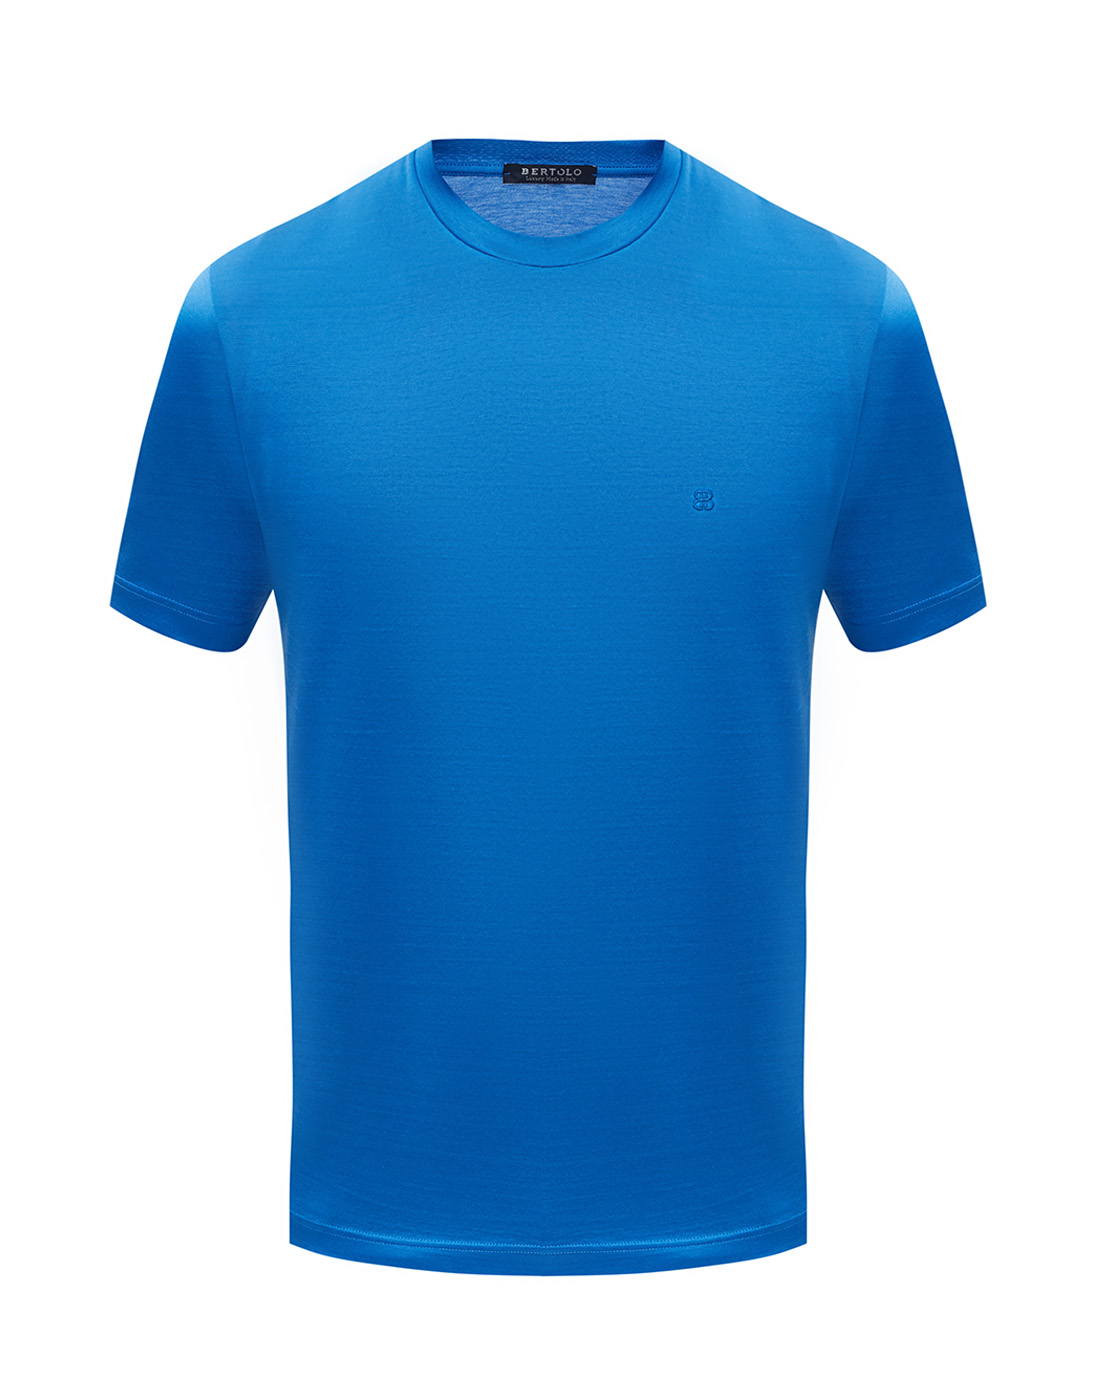 Мужская голубая футболка  Bertolo S000252/001912/1256-1